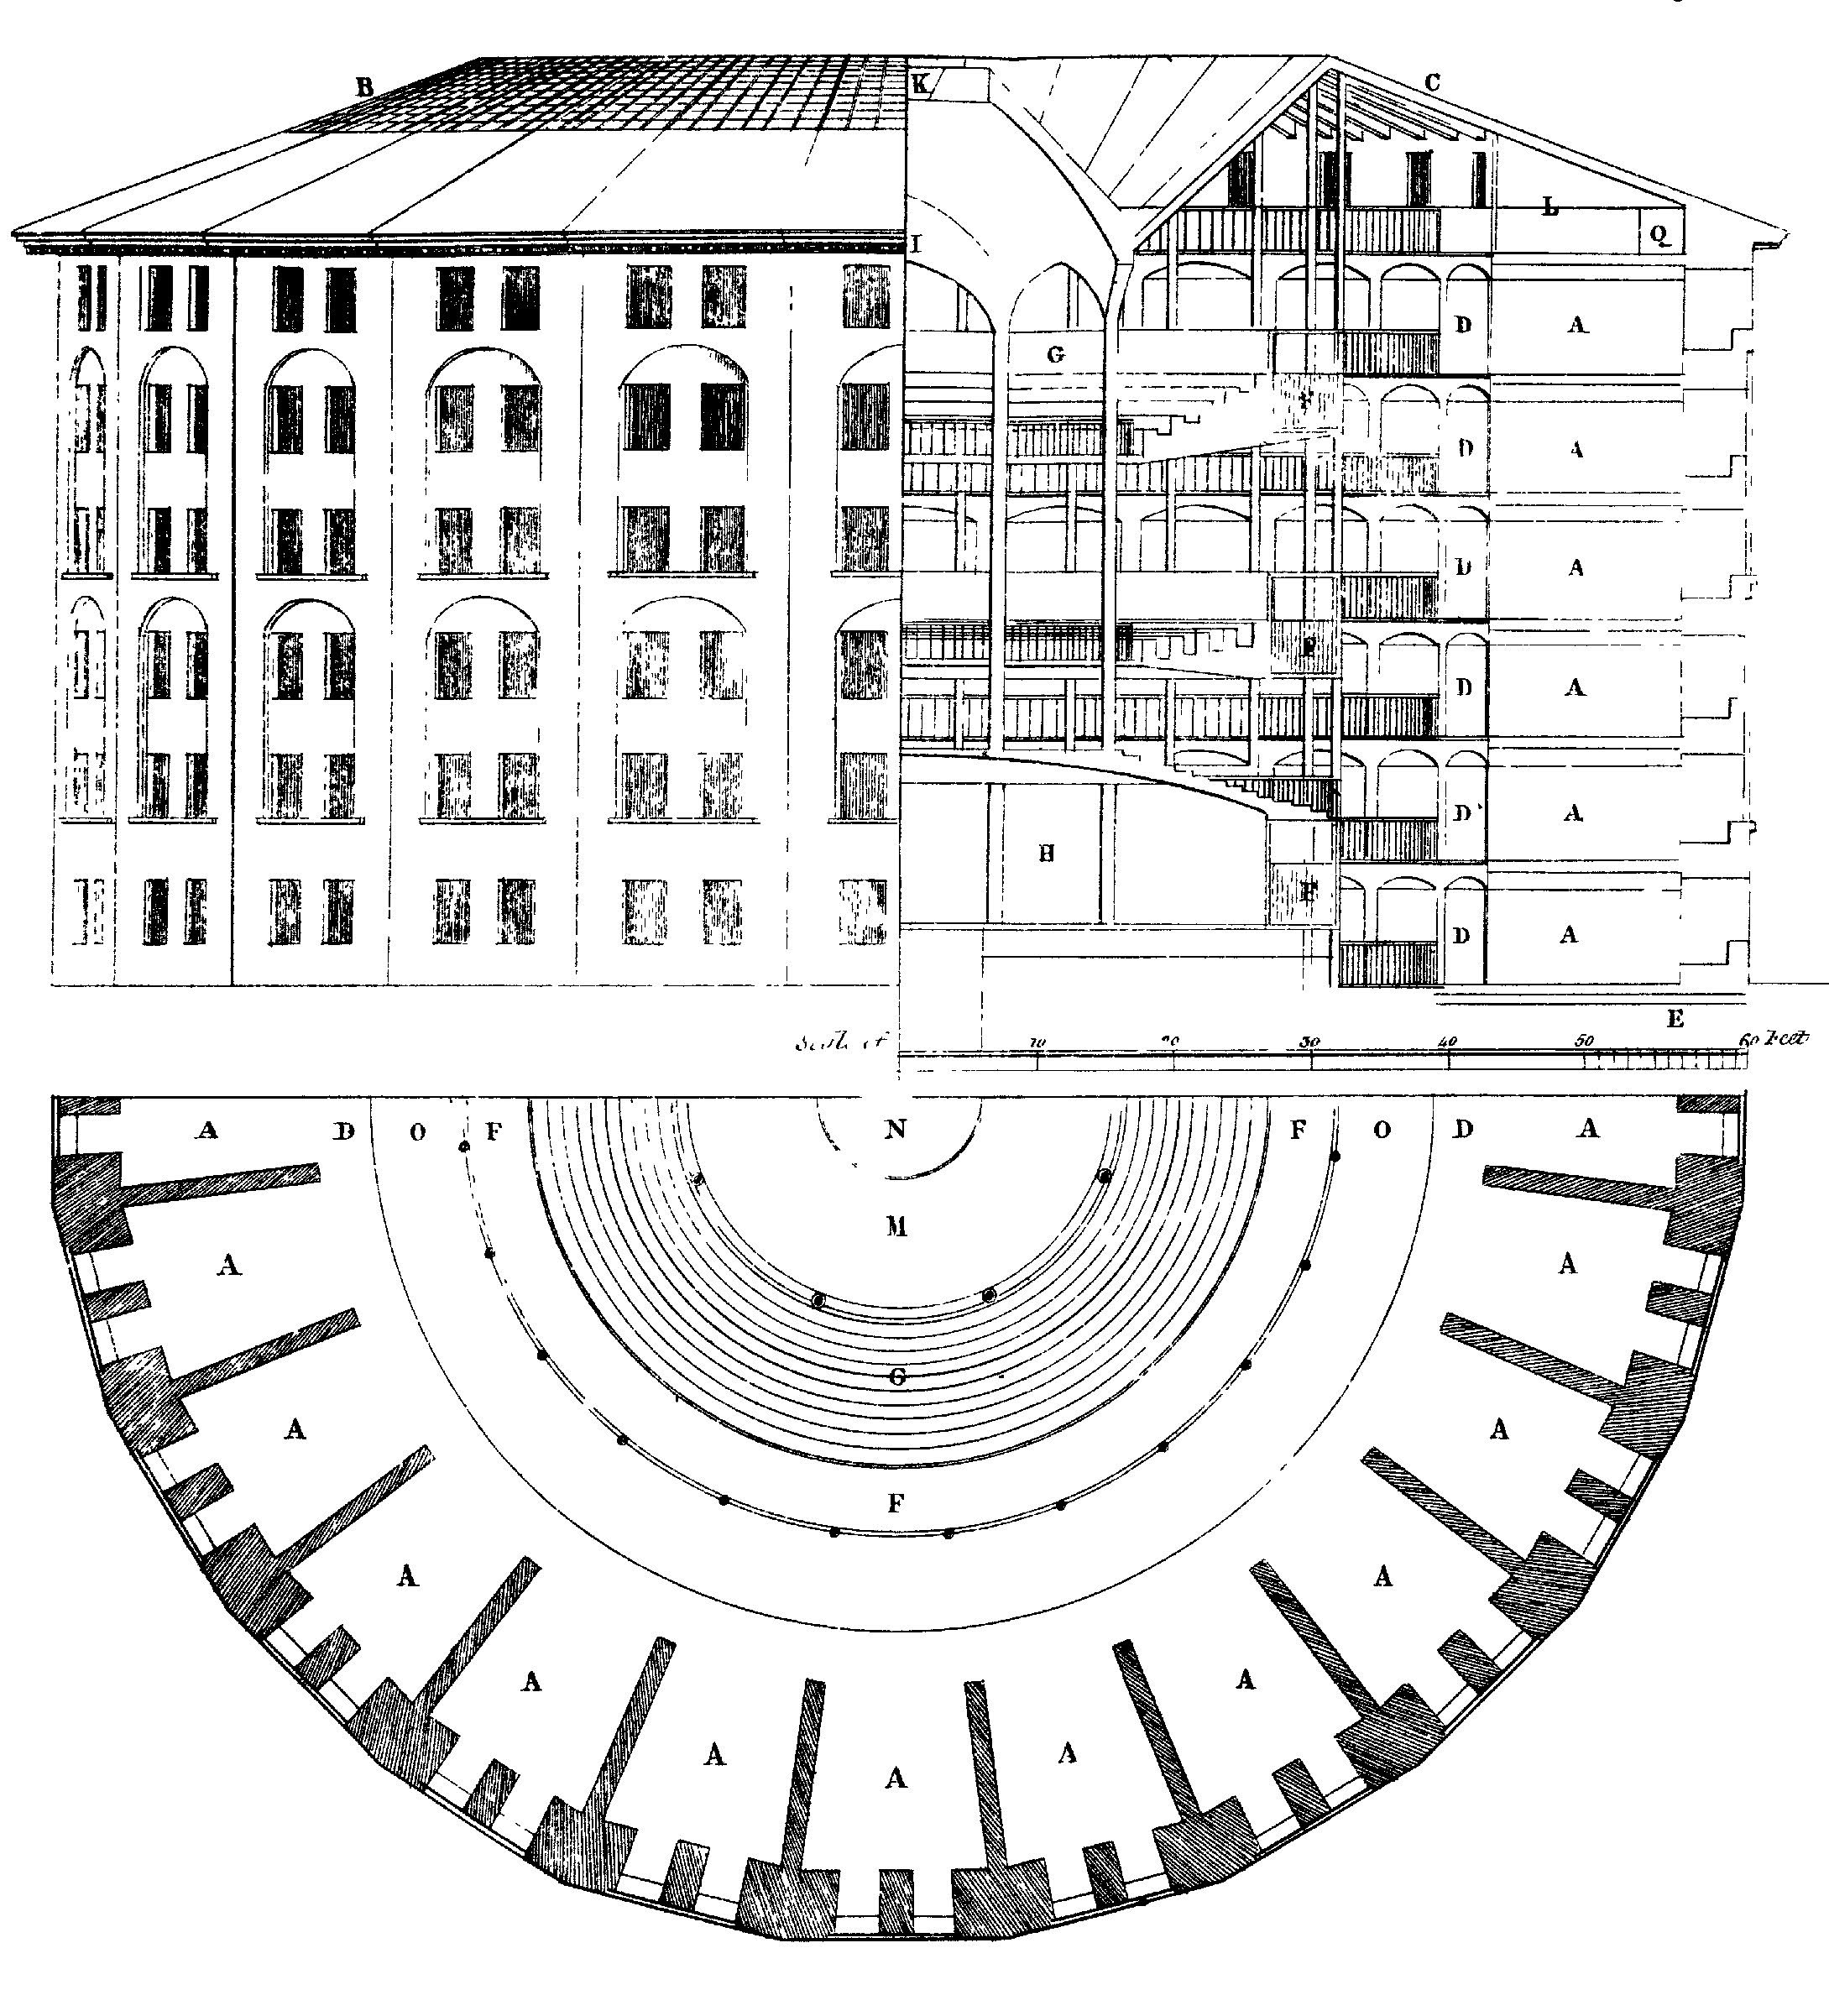 Նկար 6.3. Դիզայնը panopticon բանտի համար, որը նախապես առաջարկեց Ջերեմի Բենթհեմը: Կենտրոնում կա անտեսված տեսող, ով կարող է դիտել բոլորի վարքը, բայց չի կարող դիտվել: Drawing by Willey Reveley, 1791 (Աղբիւր, Wikimedia Commons):